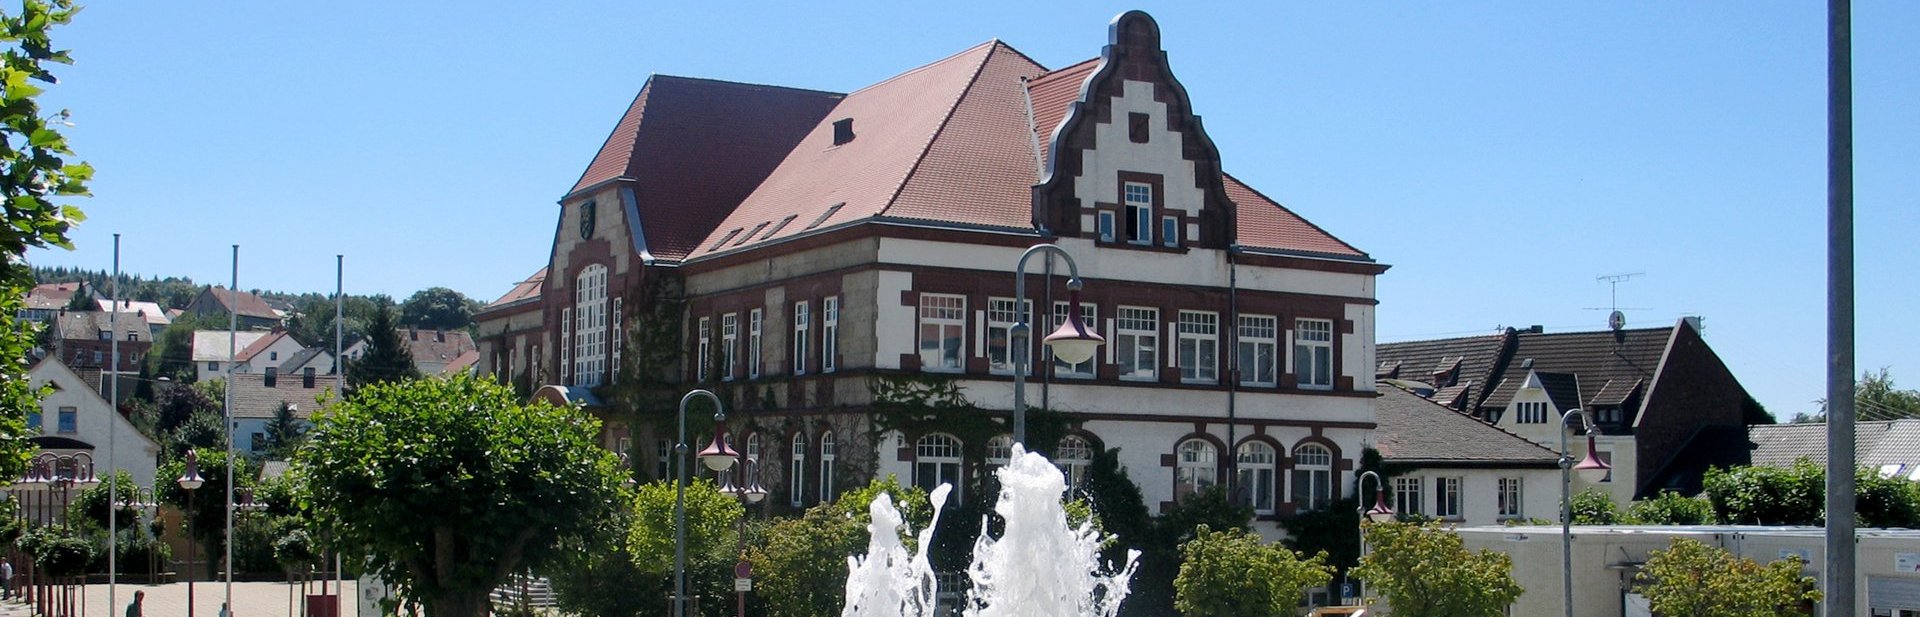 Ortsteil_Friedrichsthal_Rathaus